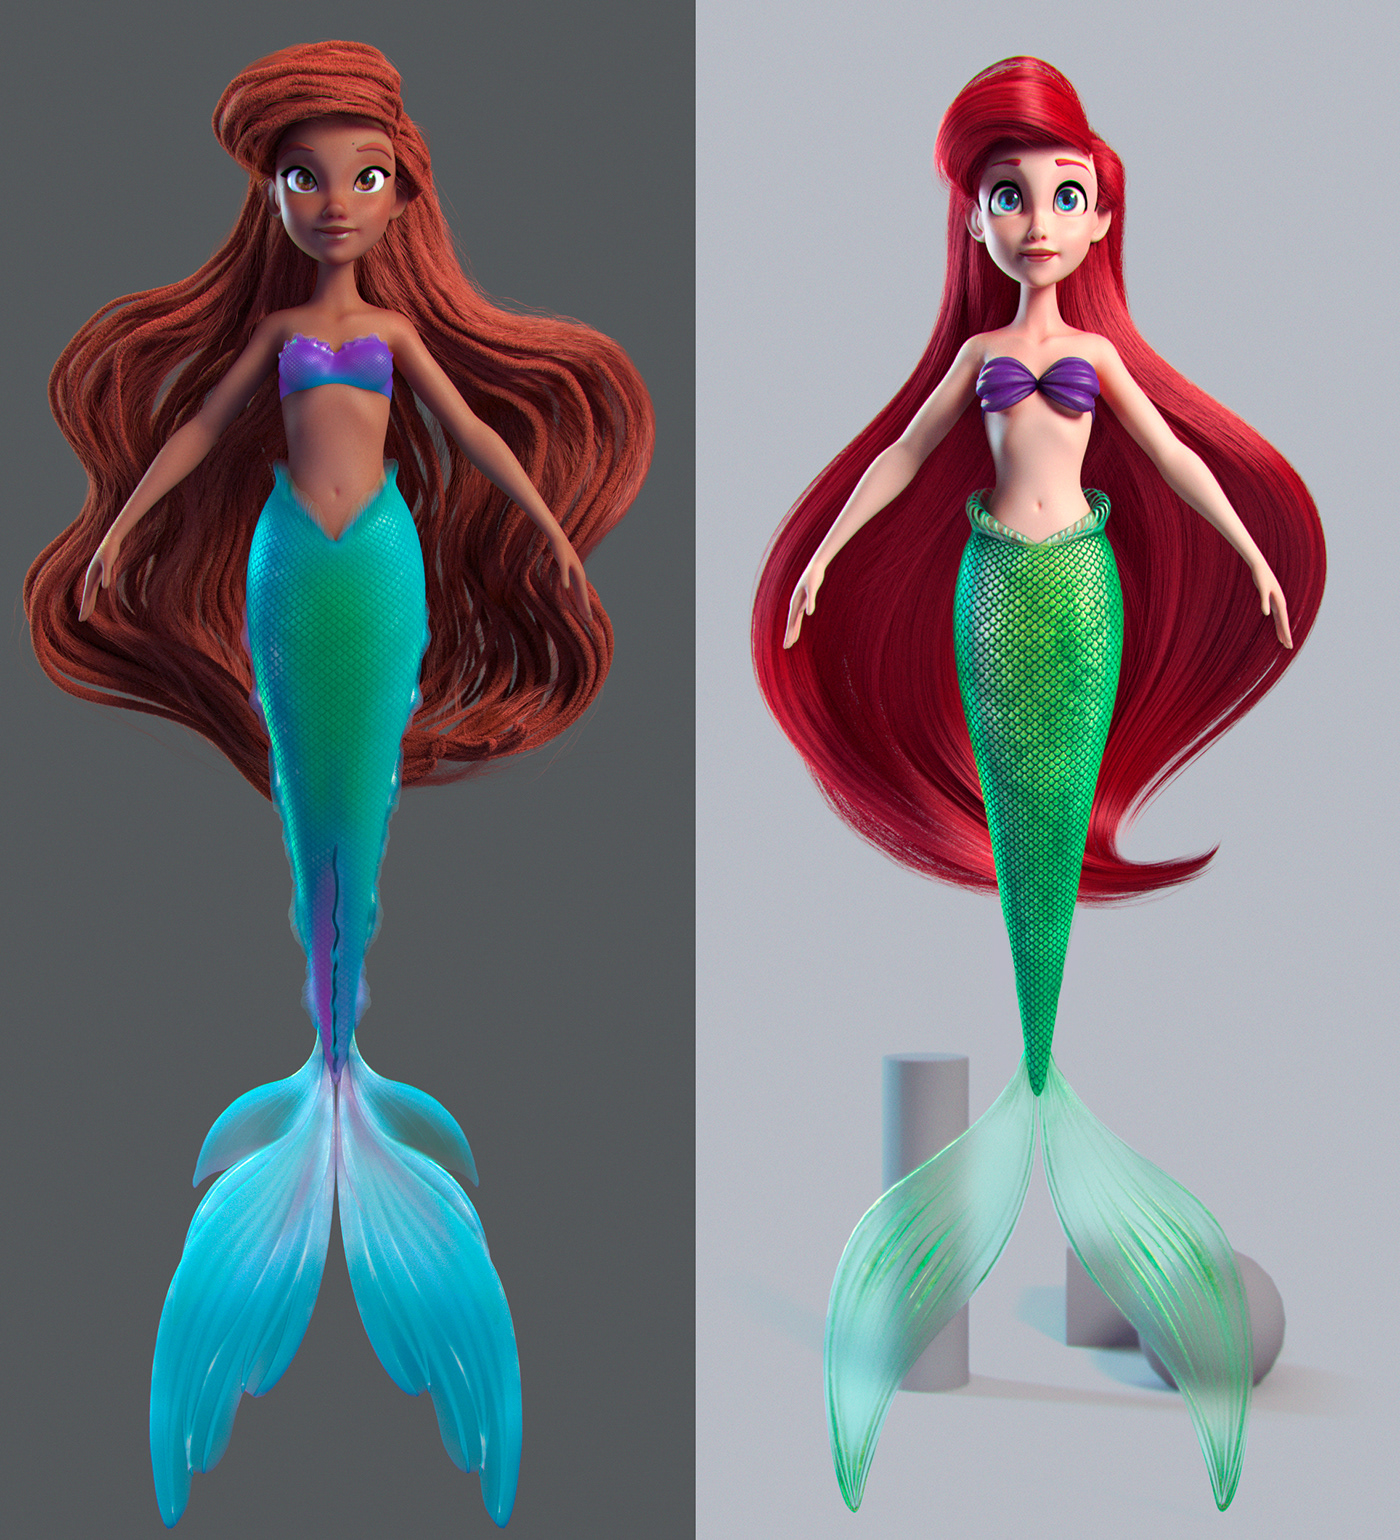 3ds max artist artwork cartoon Character design  Digital Art  disney fantasy ILLUSTRATION  mermaid